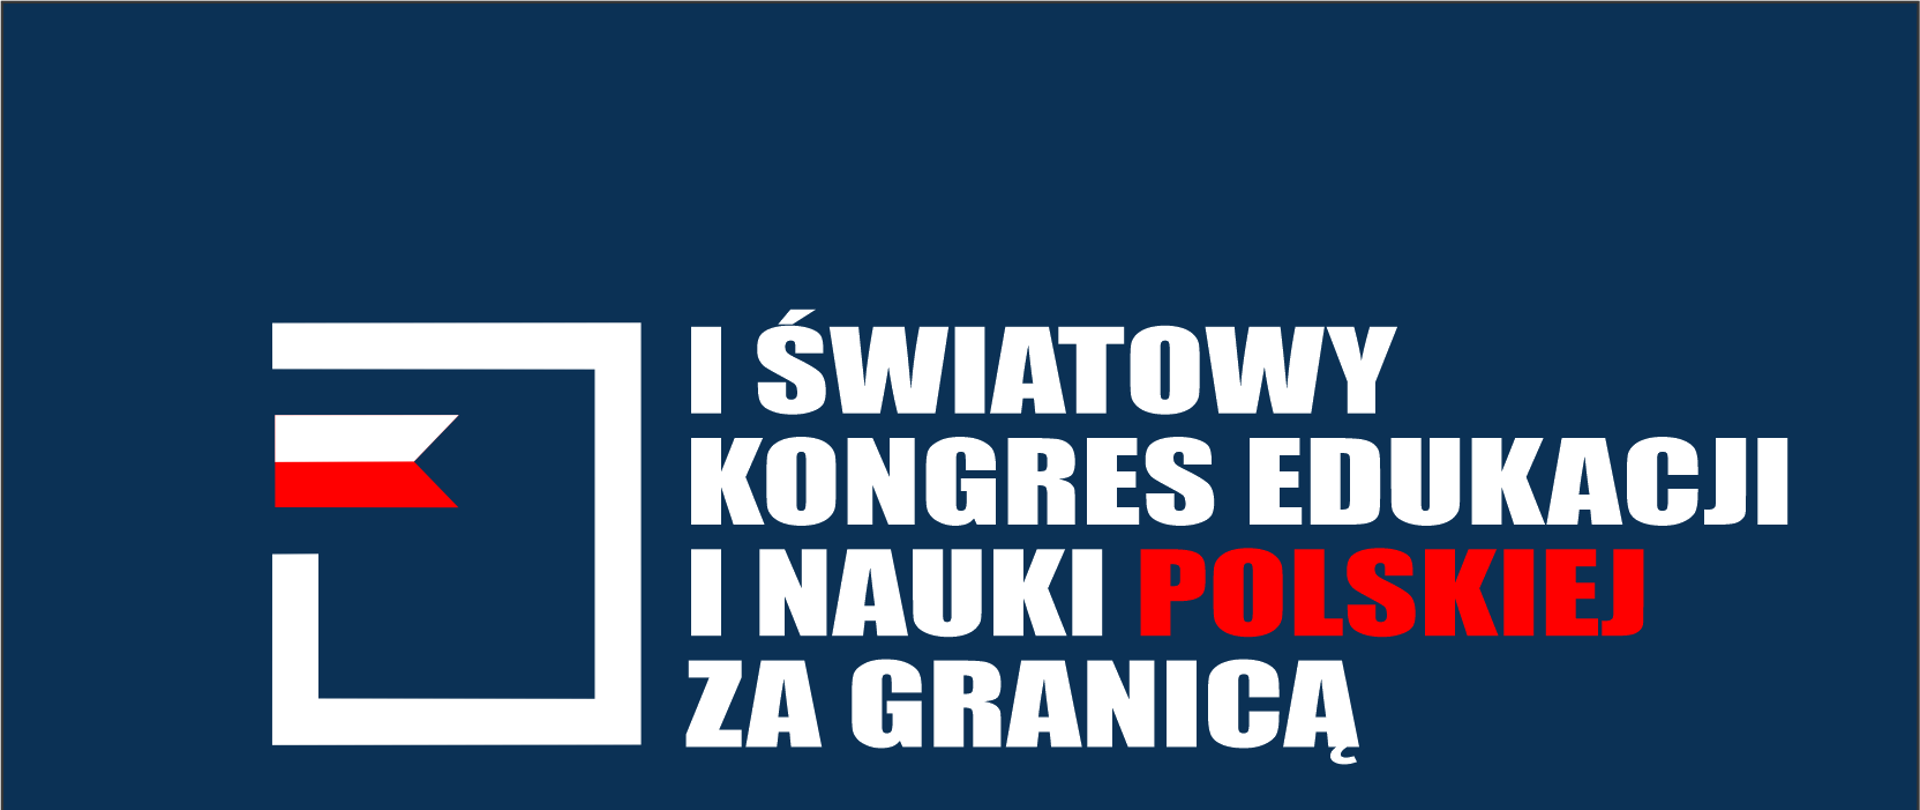 I Światowy Kongres Edukacji i Nauki Polskiej 